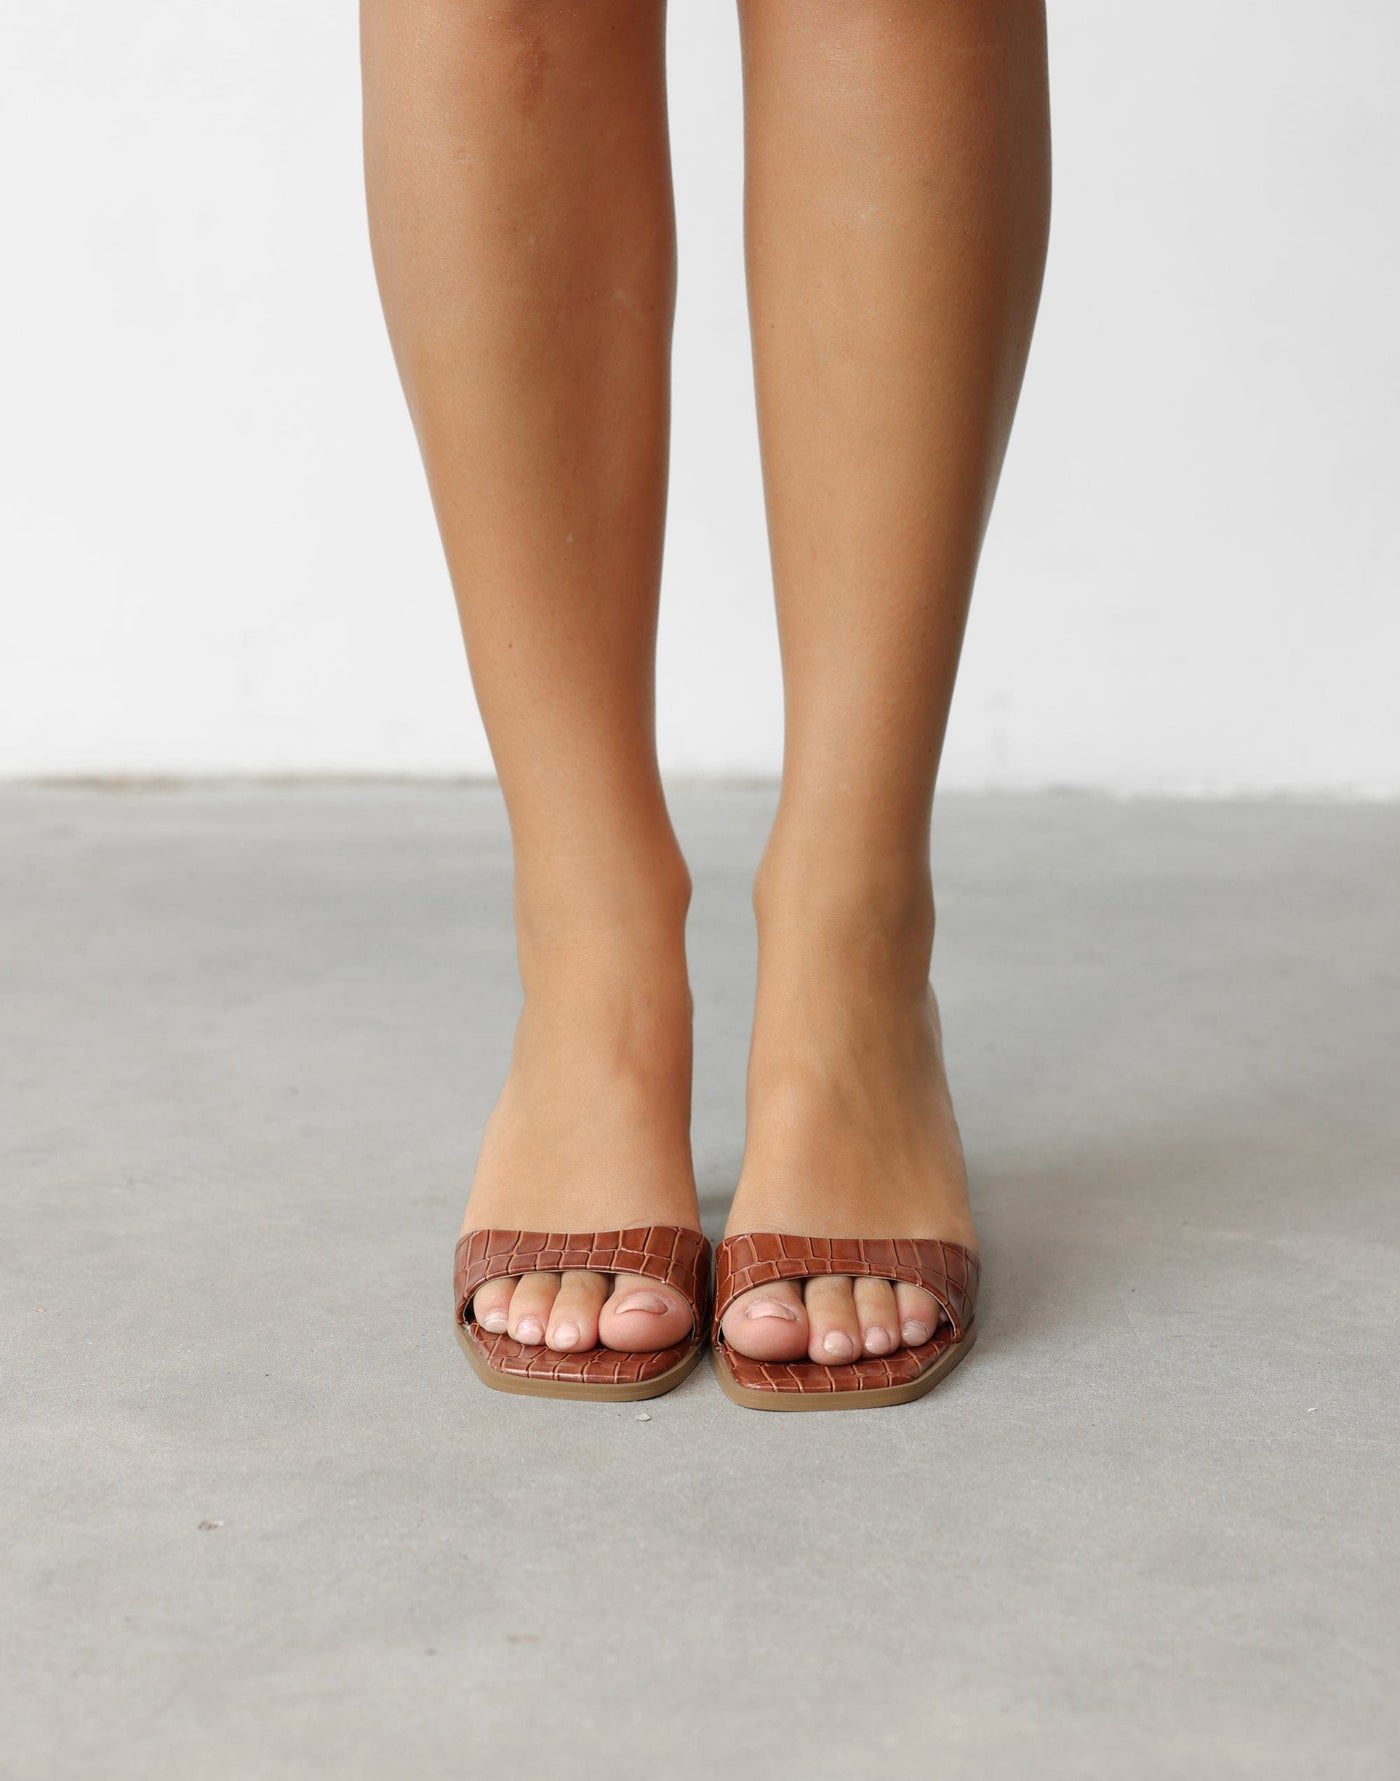 Karvan Heels (Dark Tan Choc) - By Billini - Slip-on Basic Heel - Women's Shoes - Charcoal Clothing